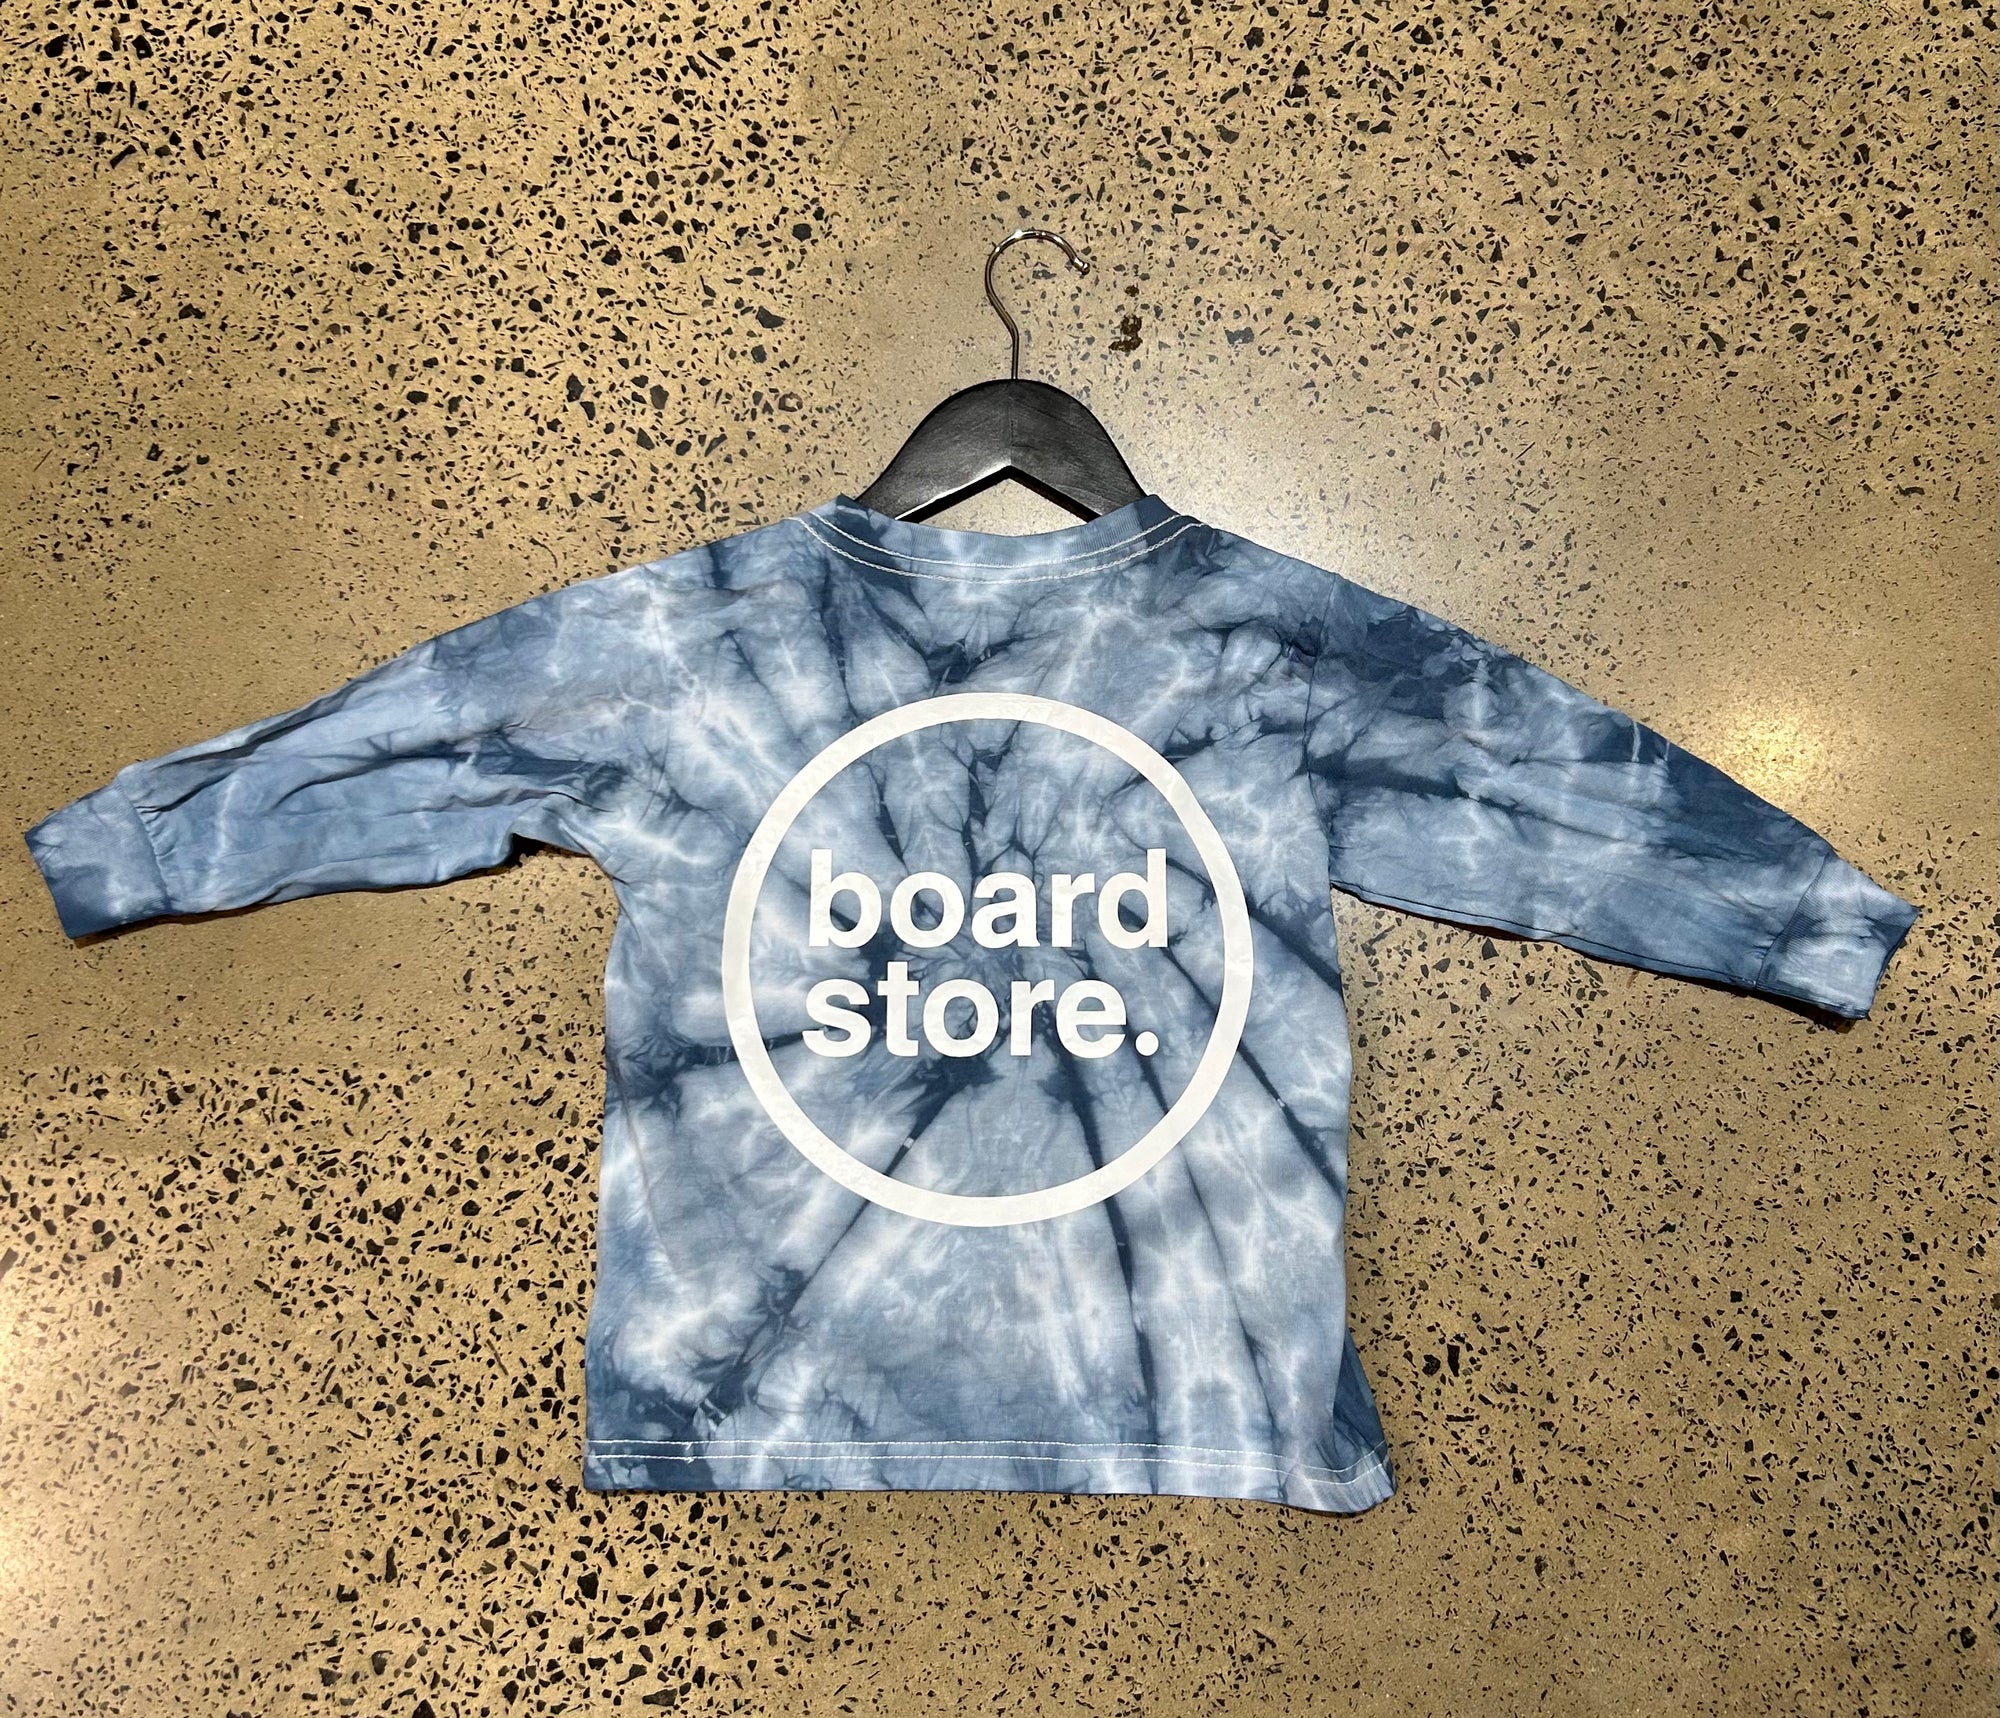 BOARDSTORE / TIE DYE GROM - Board Store Board StoreTee Shirt  